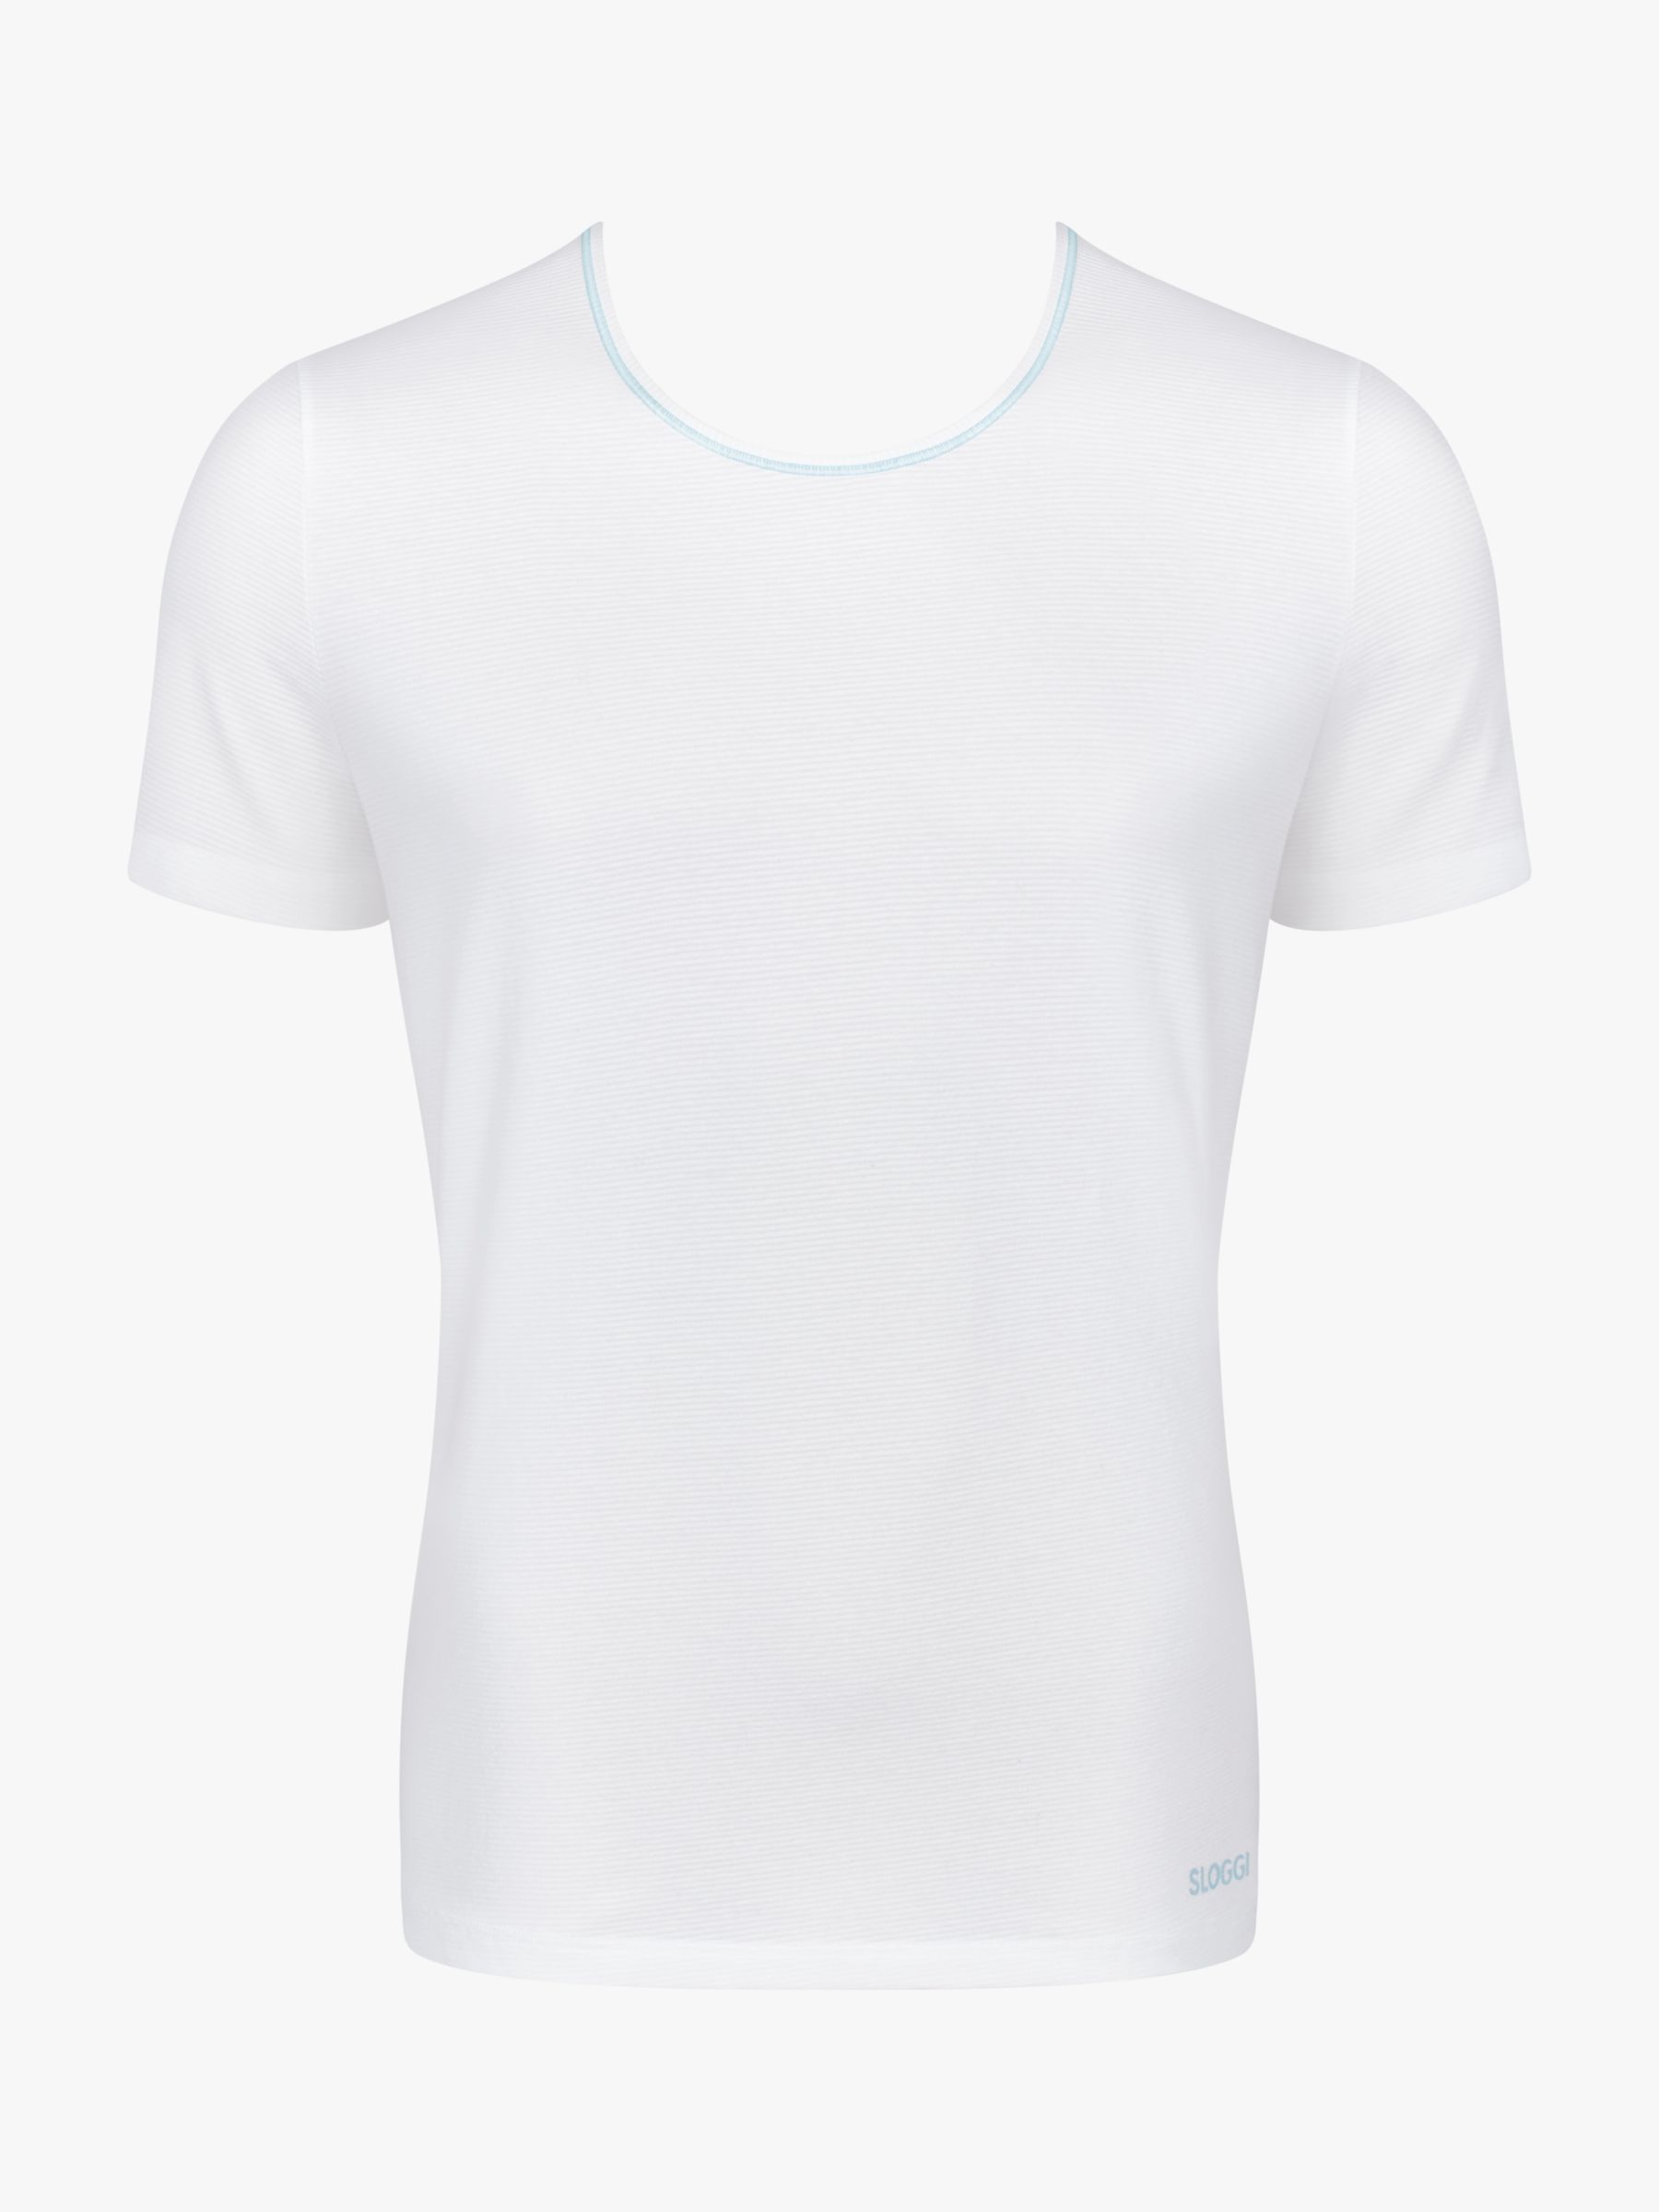 sloggi EVER Cool O-Neck T-Shirt, White, L